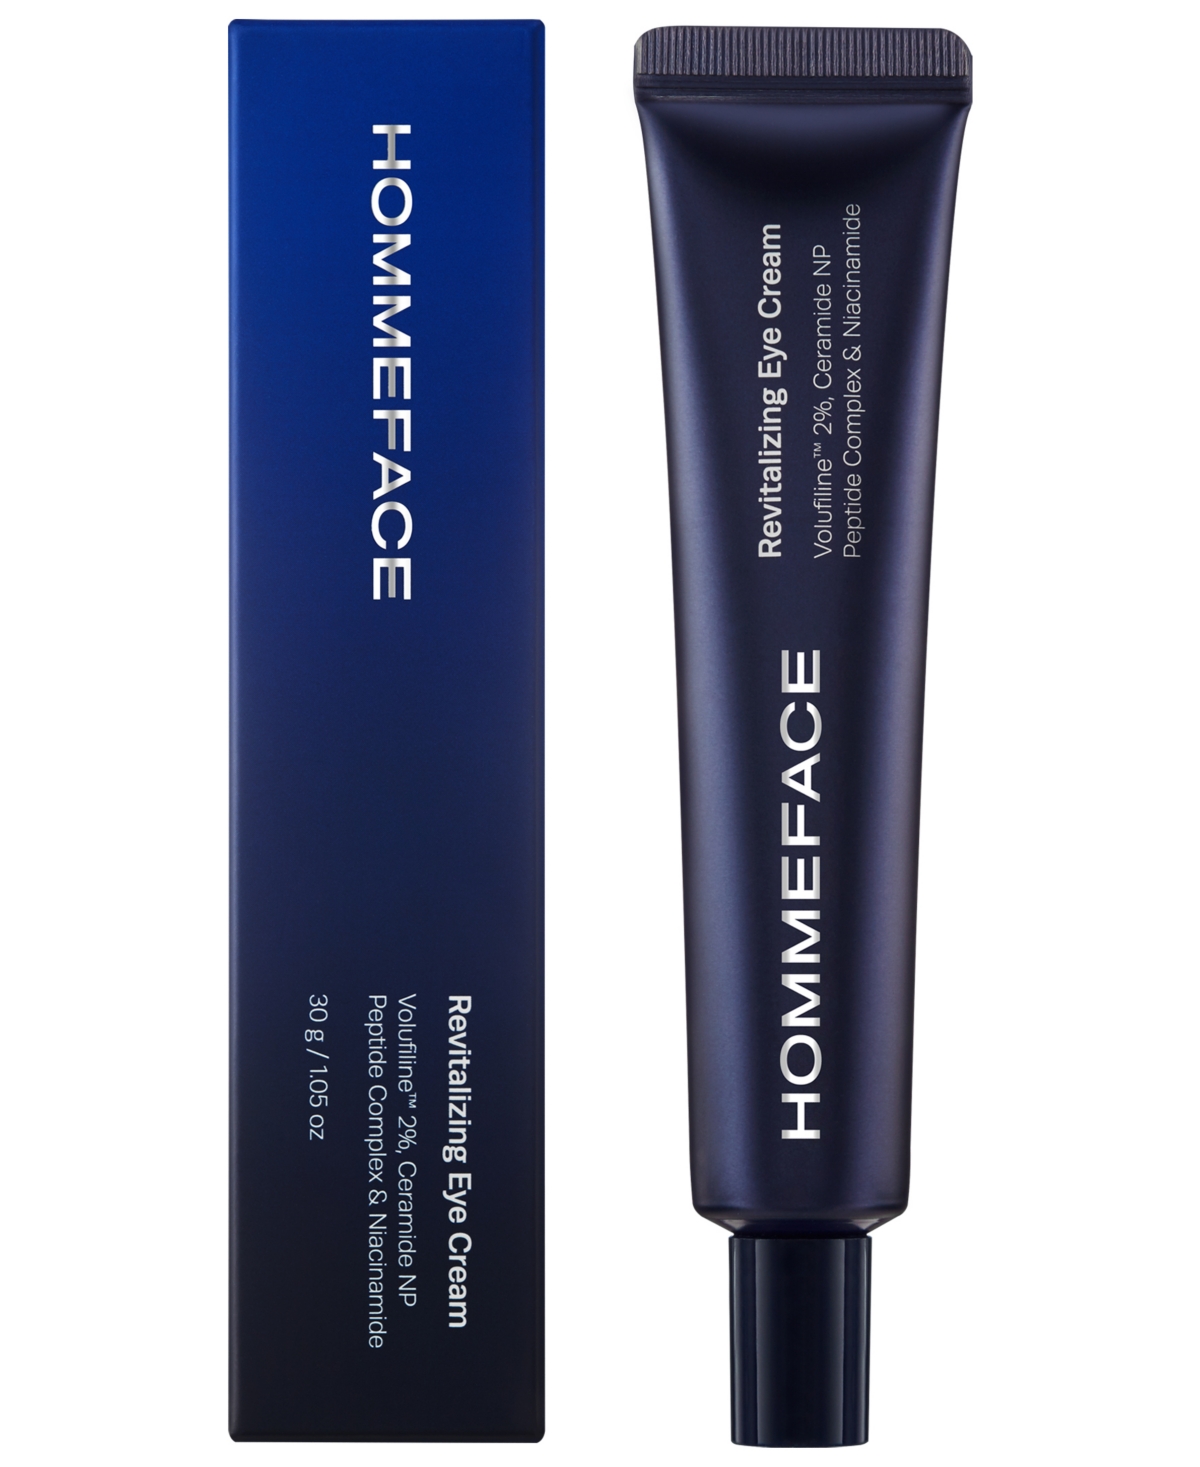 Hommeface Revitalizing Eye Cream, 1.5 oz